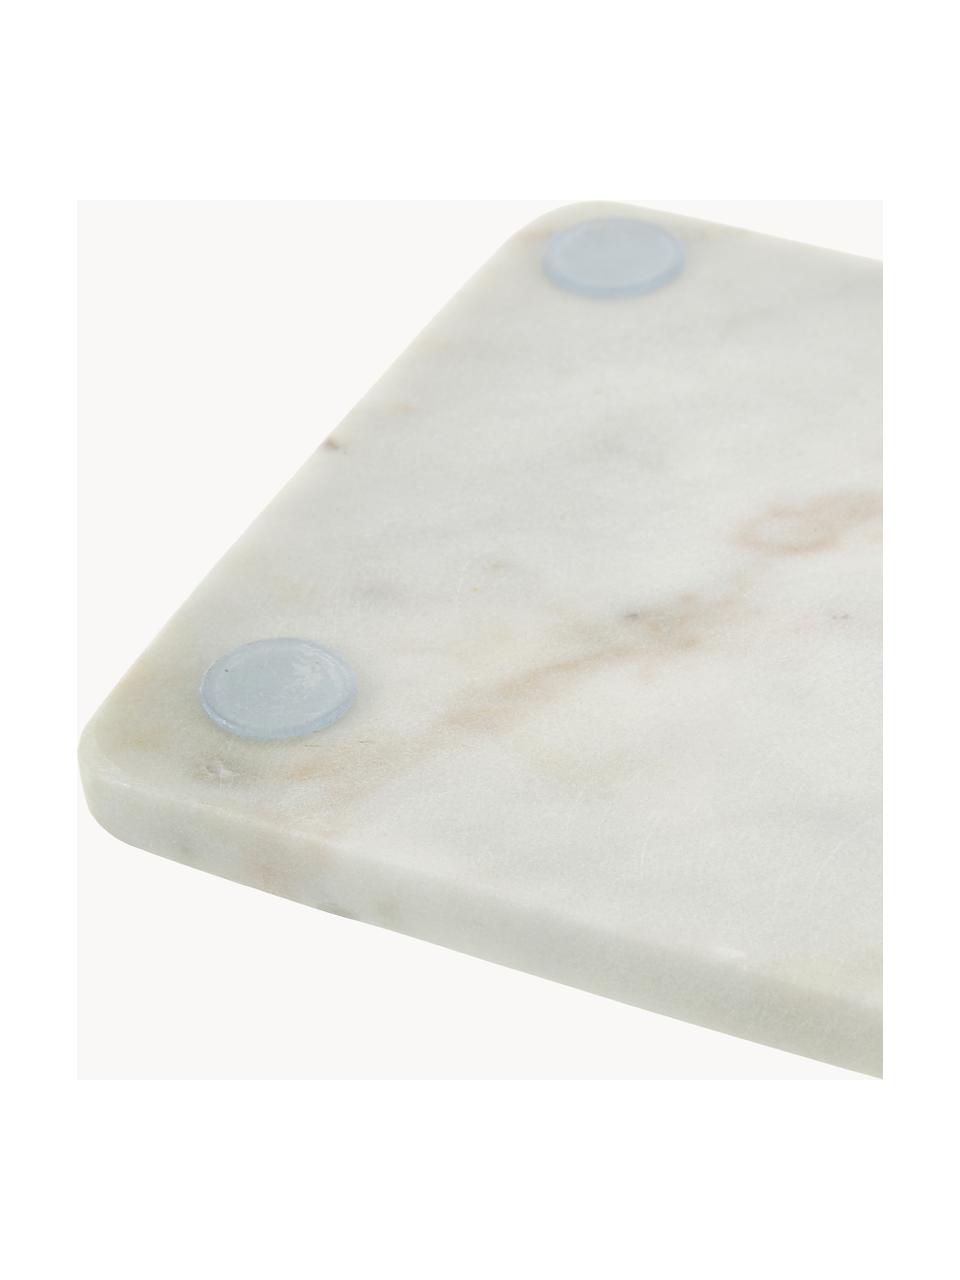 Marmor-Schneidebrett Strip, Weiß, marmoriert, B 37 x T 15 cm